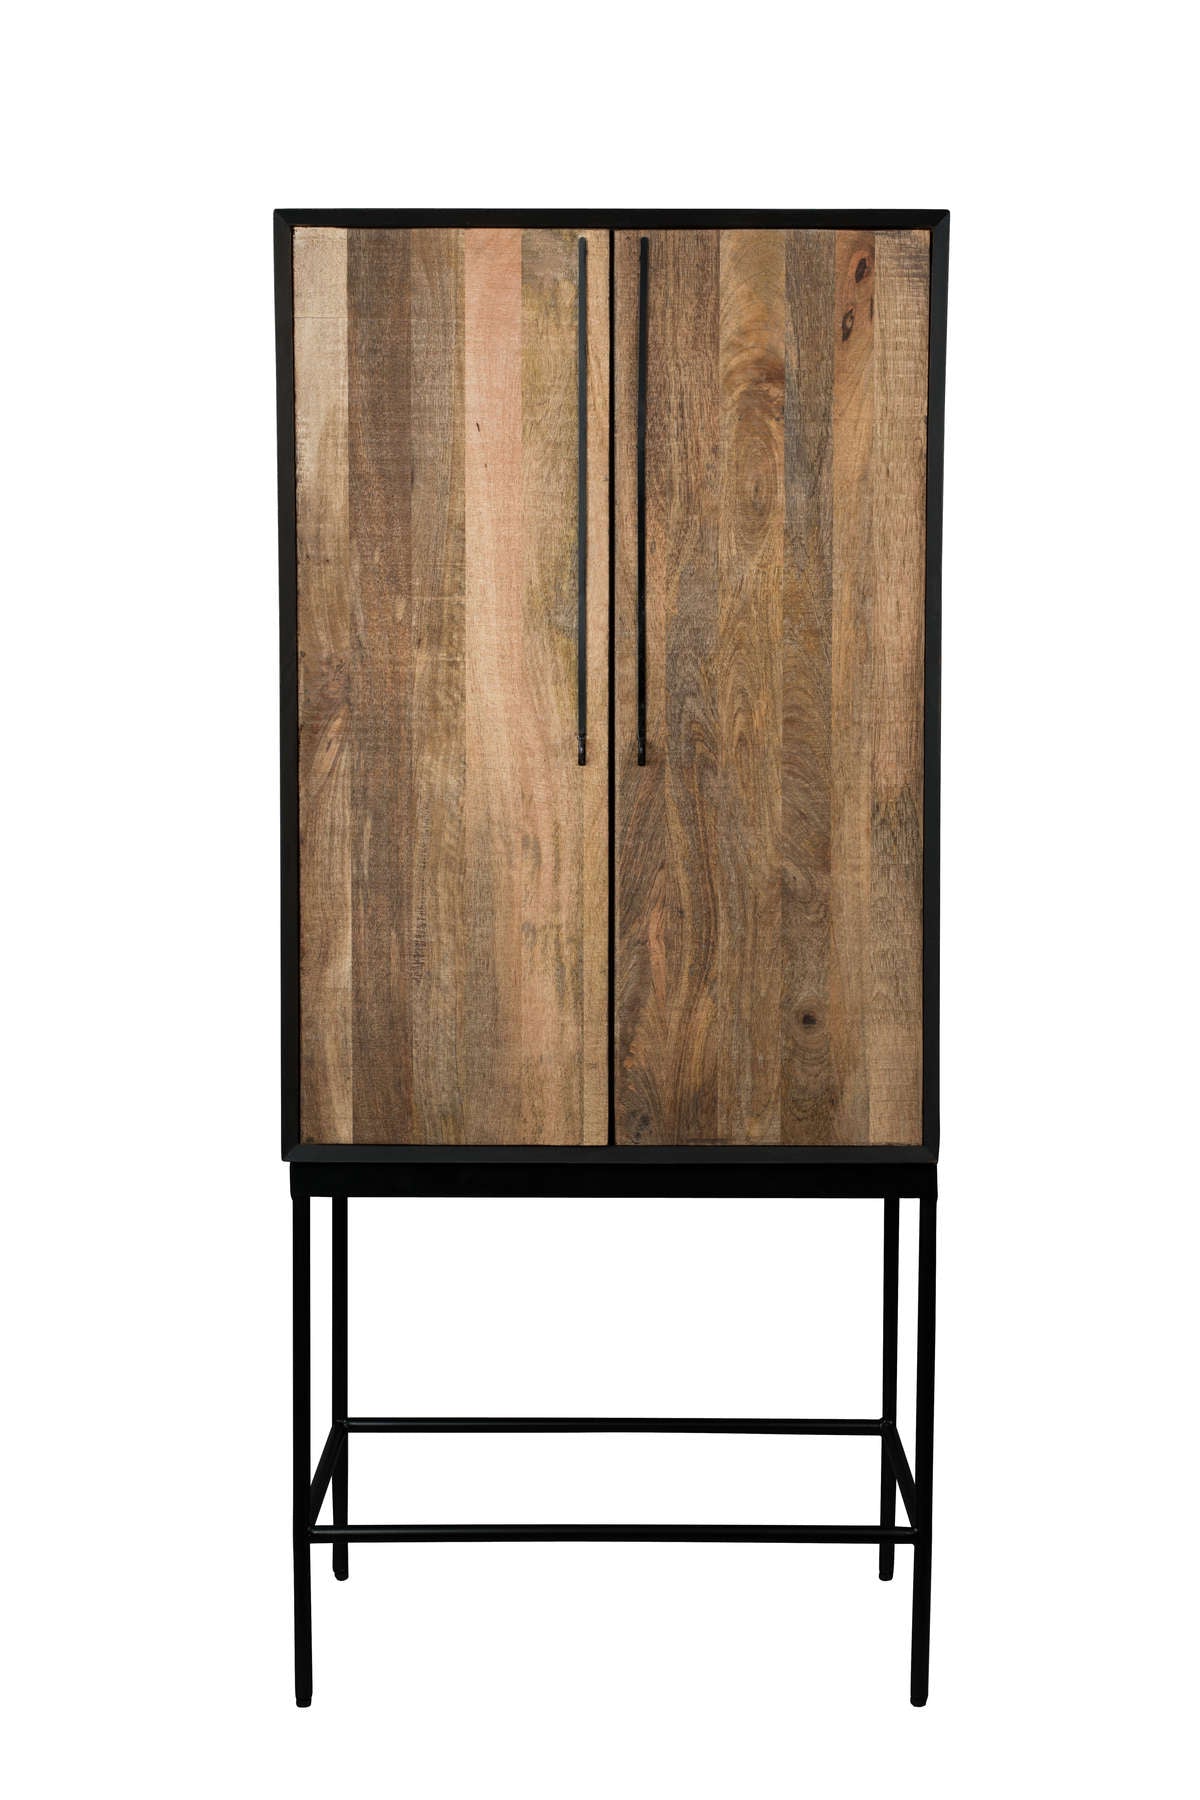 for living Designer bedroom room. Eye Functional on - Design dressers cabinets for